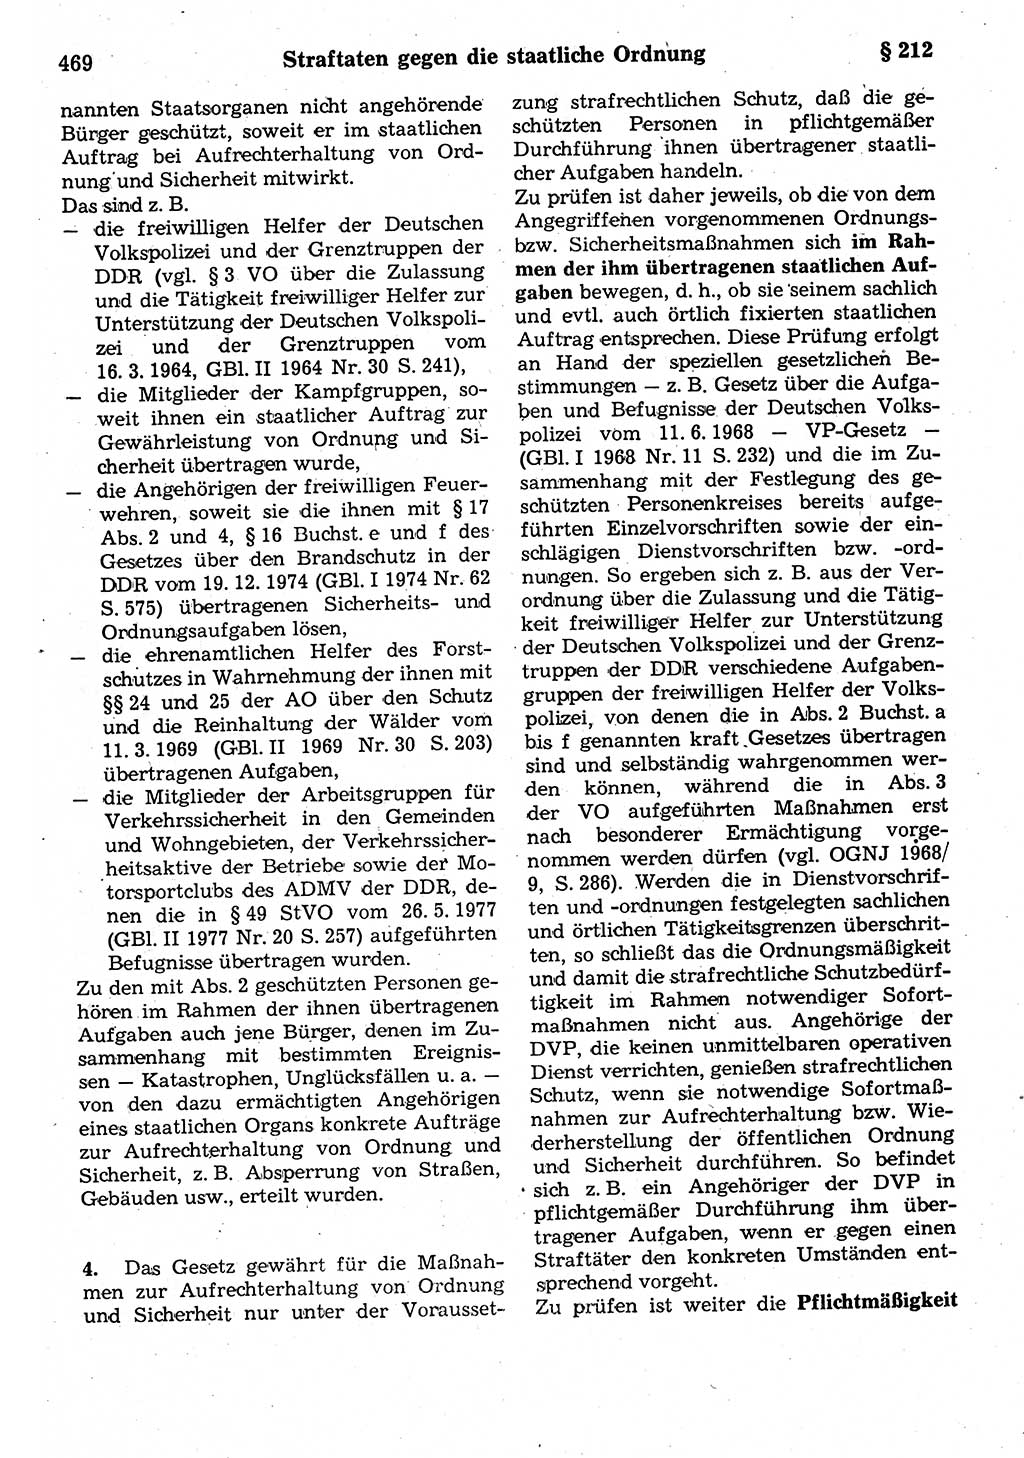 Strafrecht der Deutschen Demokratischen Republik (DDR), Kommentar zum Strafgesetzbuch (StGB) 1987, Seite 469 (Strafr. DDR Komm. StGB 1987, S. 469)